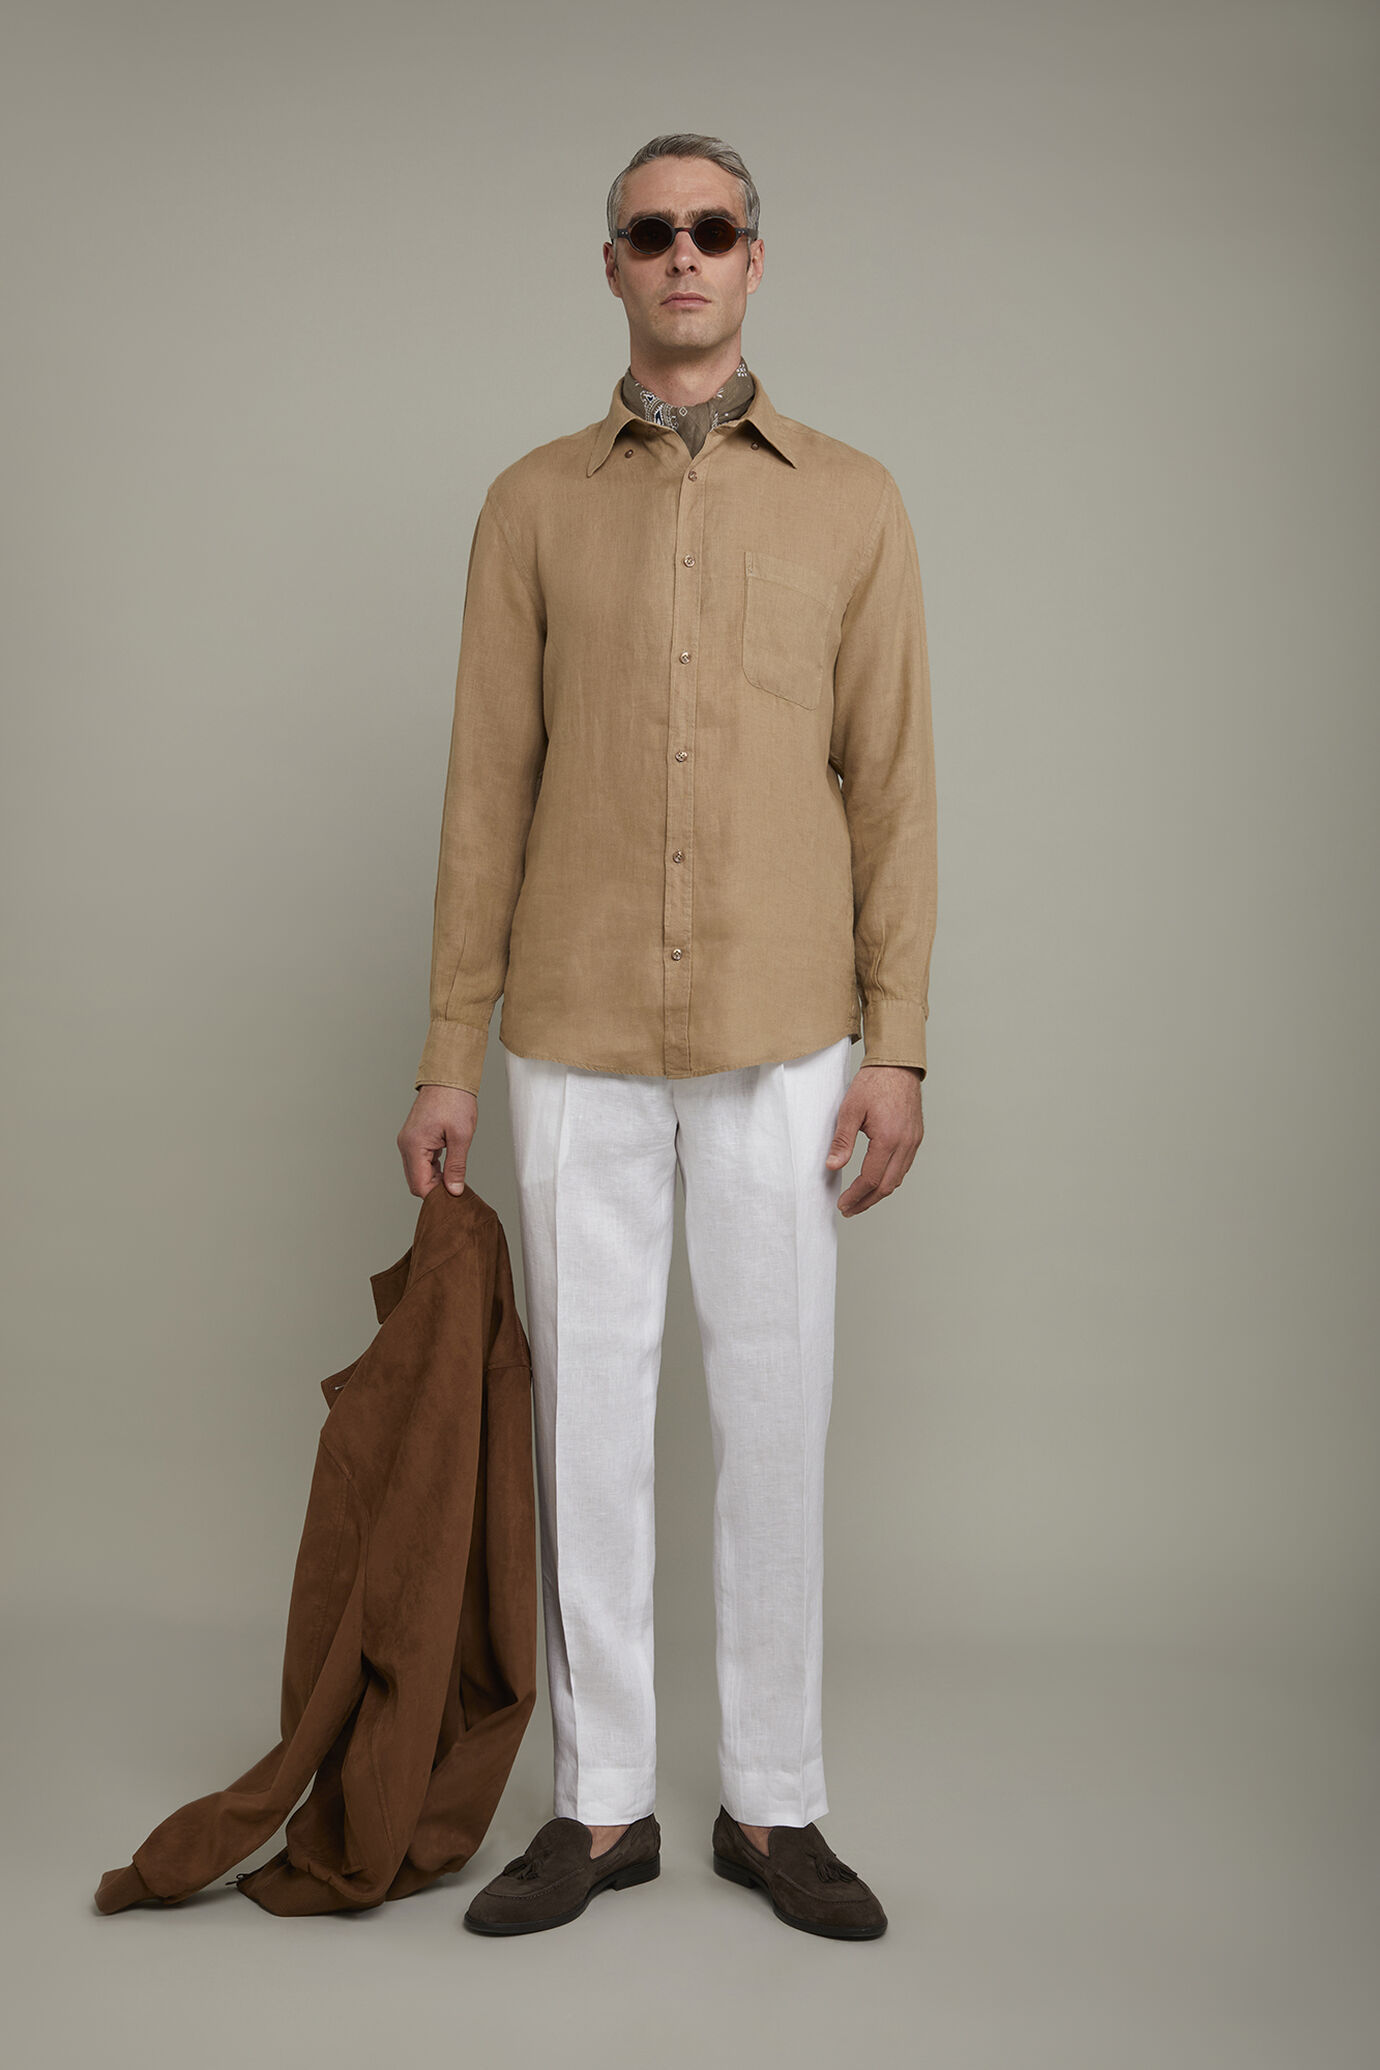 Camicia casual uomo collo button down 100% lino comfort fit